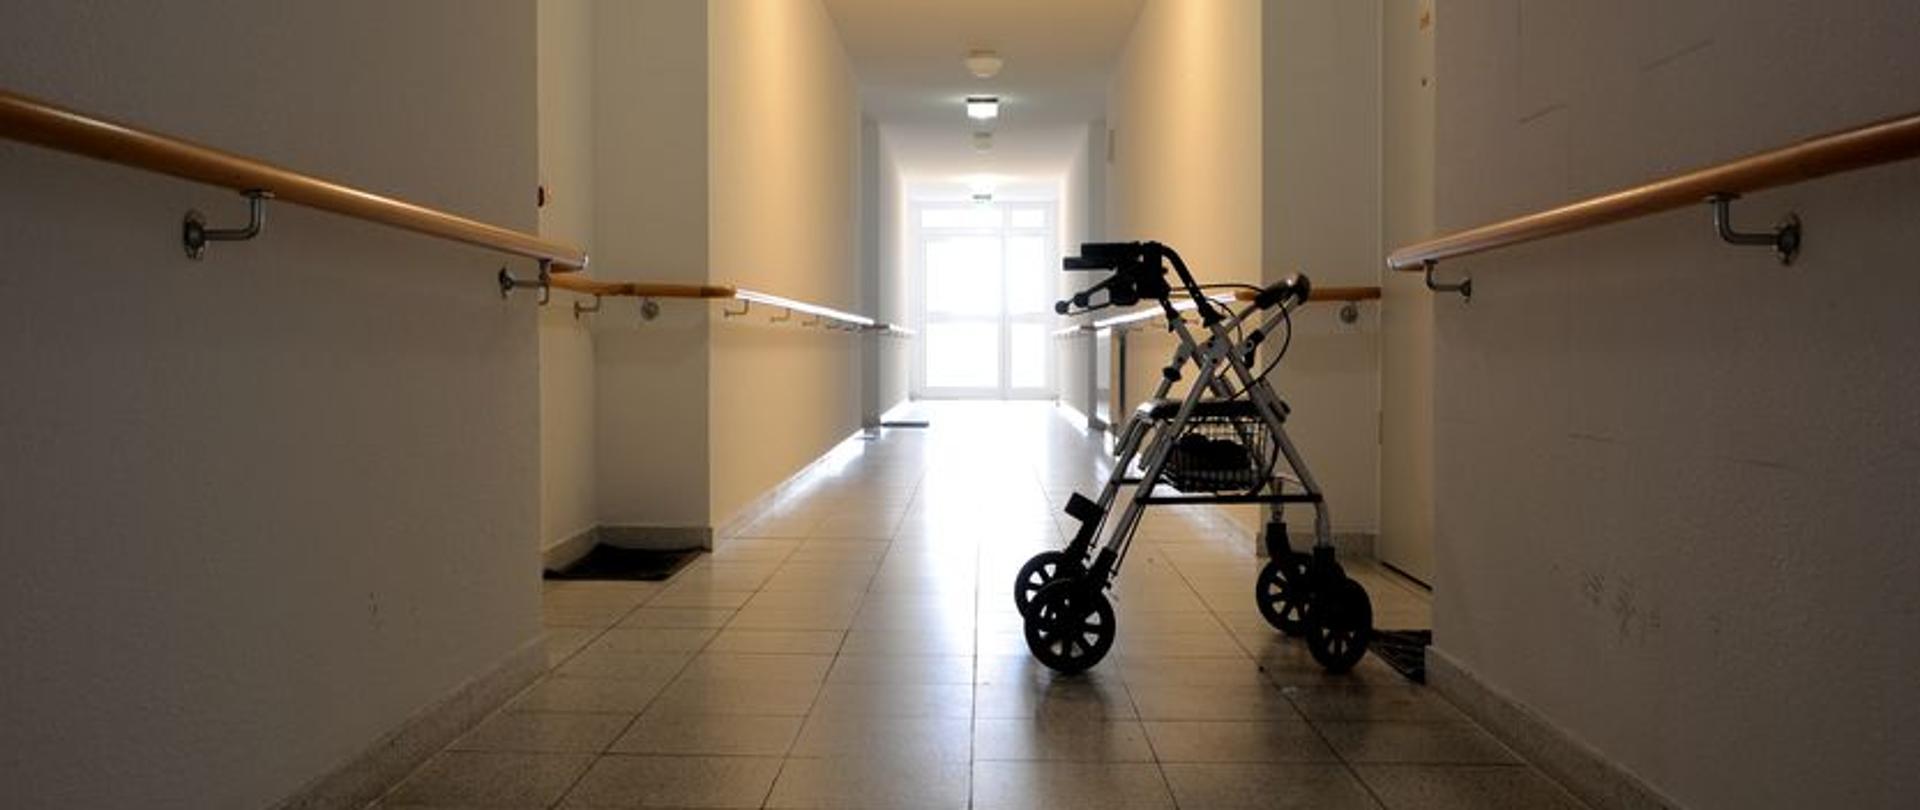 23835598 - a long corridor in a nursing home